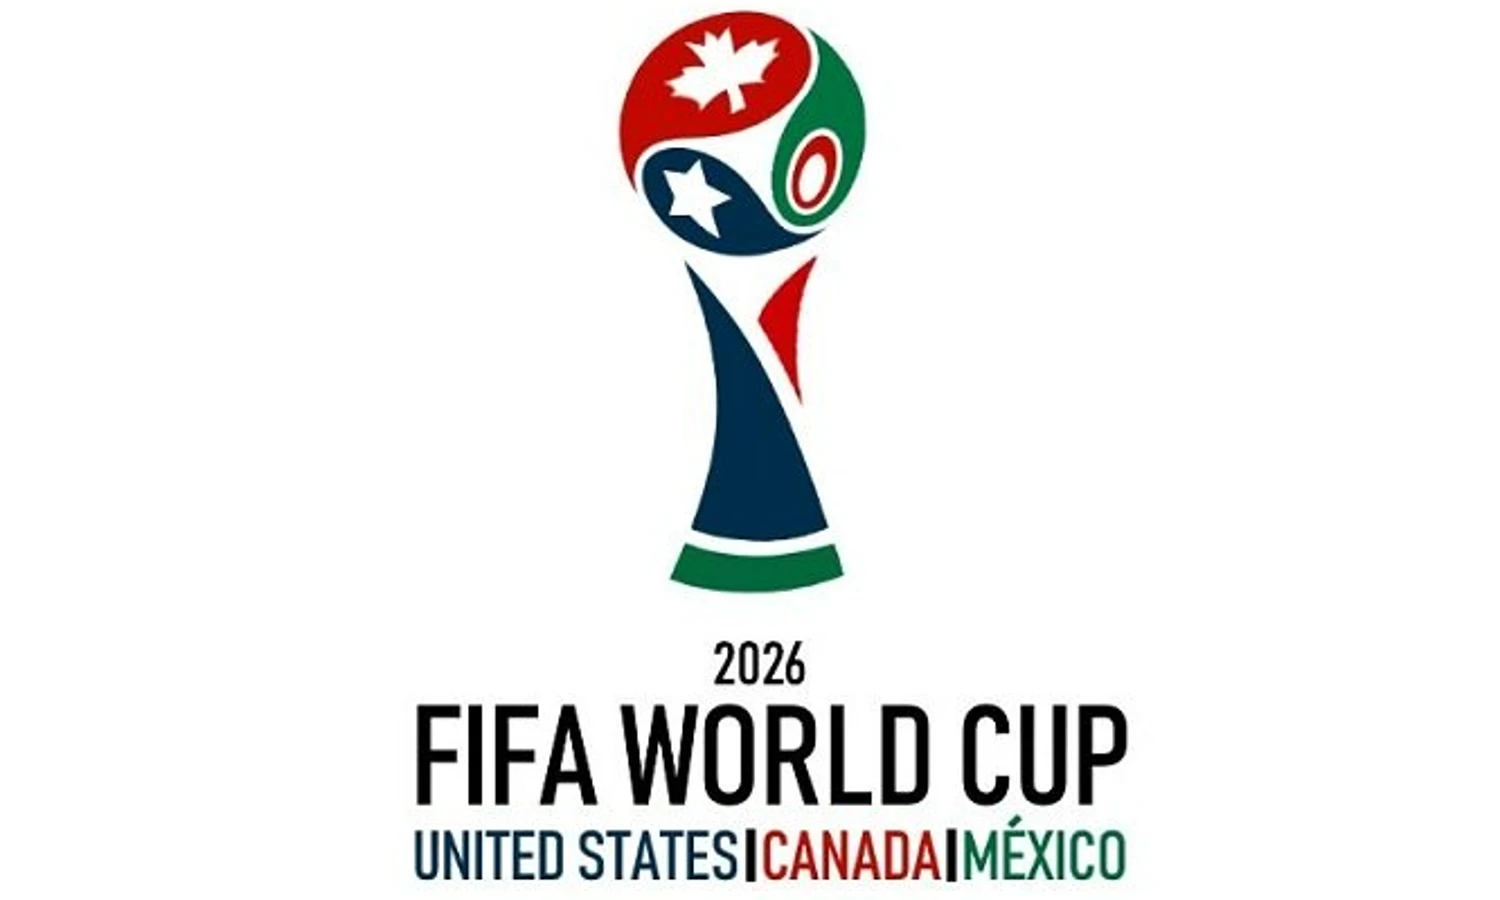 16 июня 2026. World Cup 2026. FIFA World Cup 2026. Логотип ЧМ по футболу 2026. Кубок ЧМ 2026.